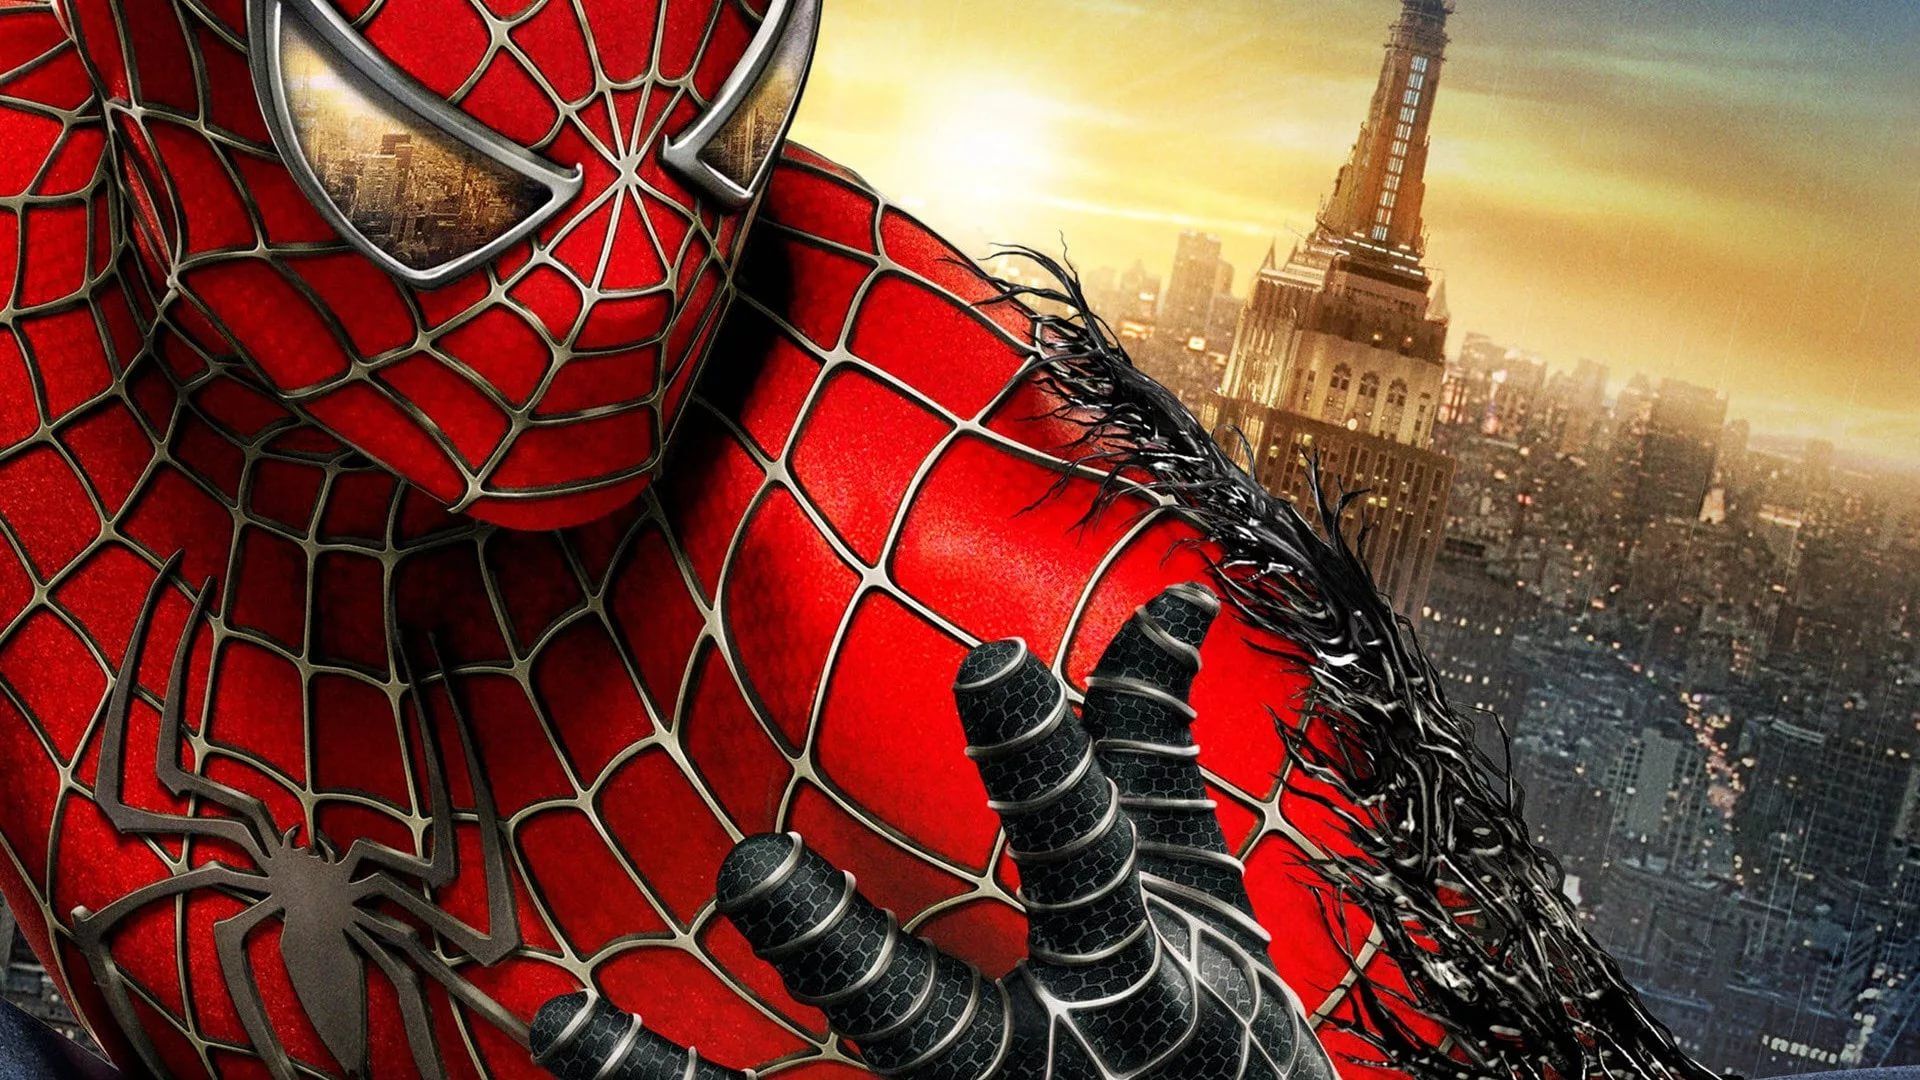 Spiderman Background Wallpaper